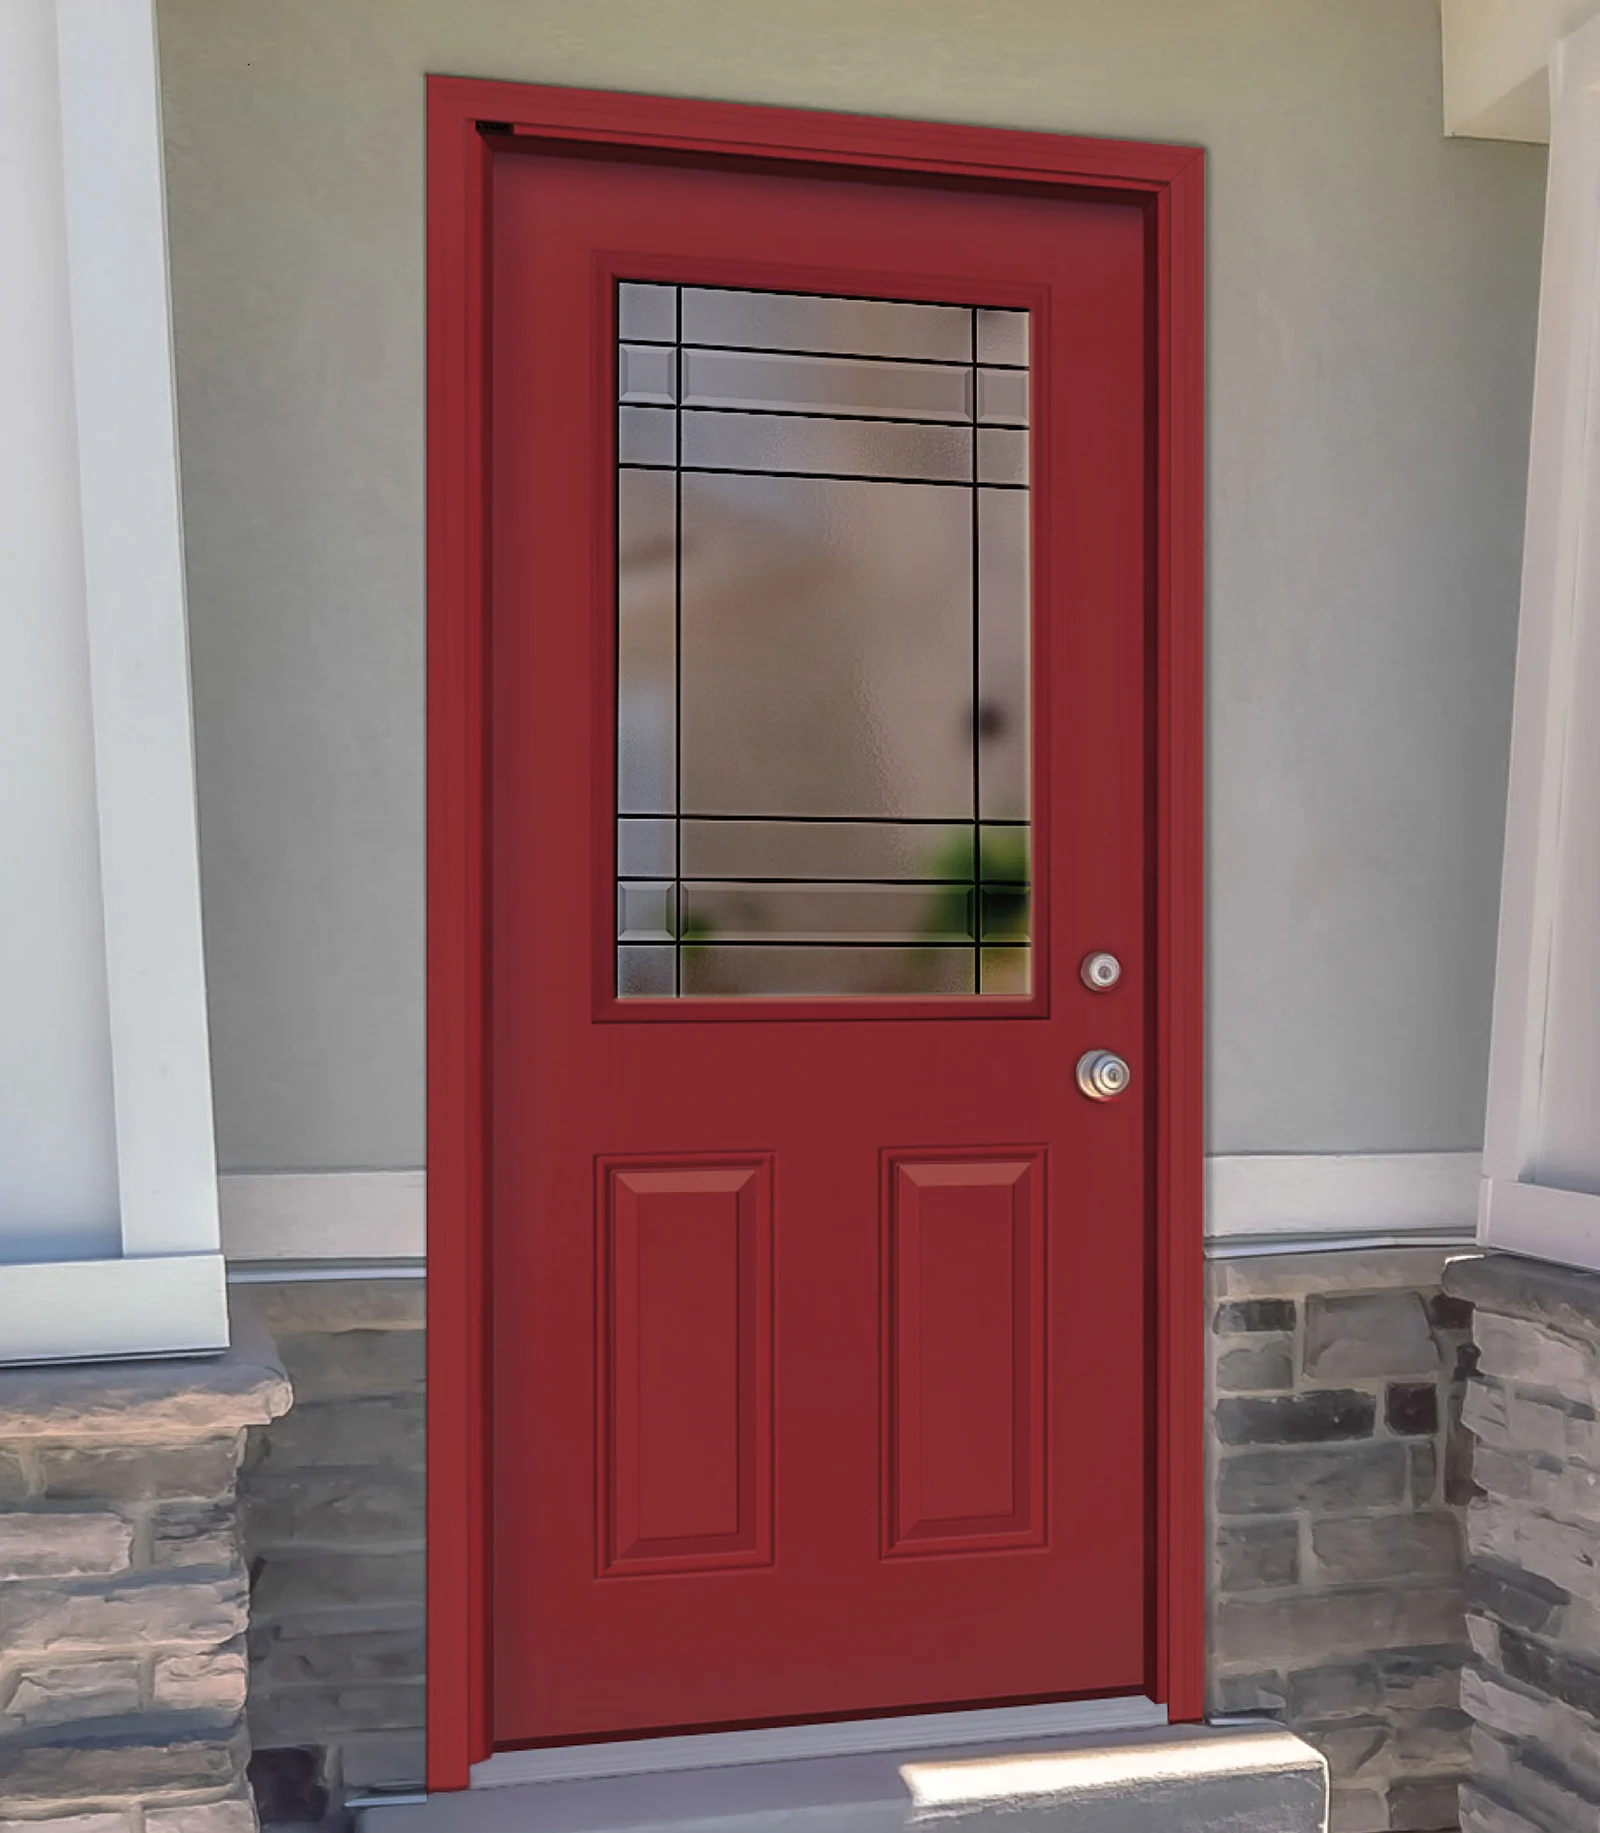 A fibreglass front door